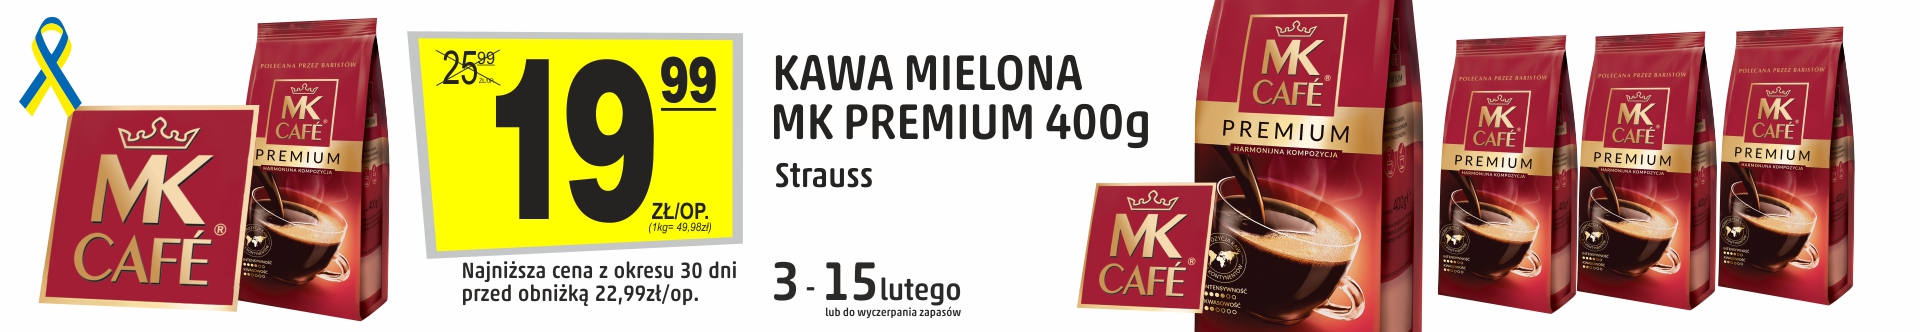 Sklepy Społem - KAWA MIELONA MK PREMIUM 400G